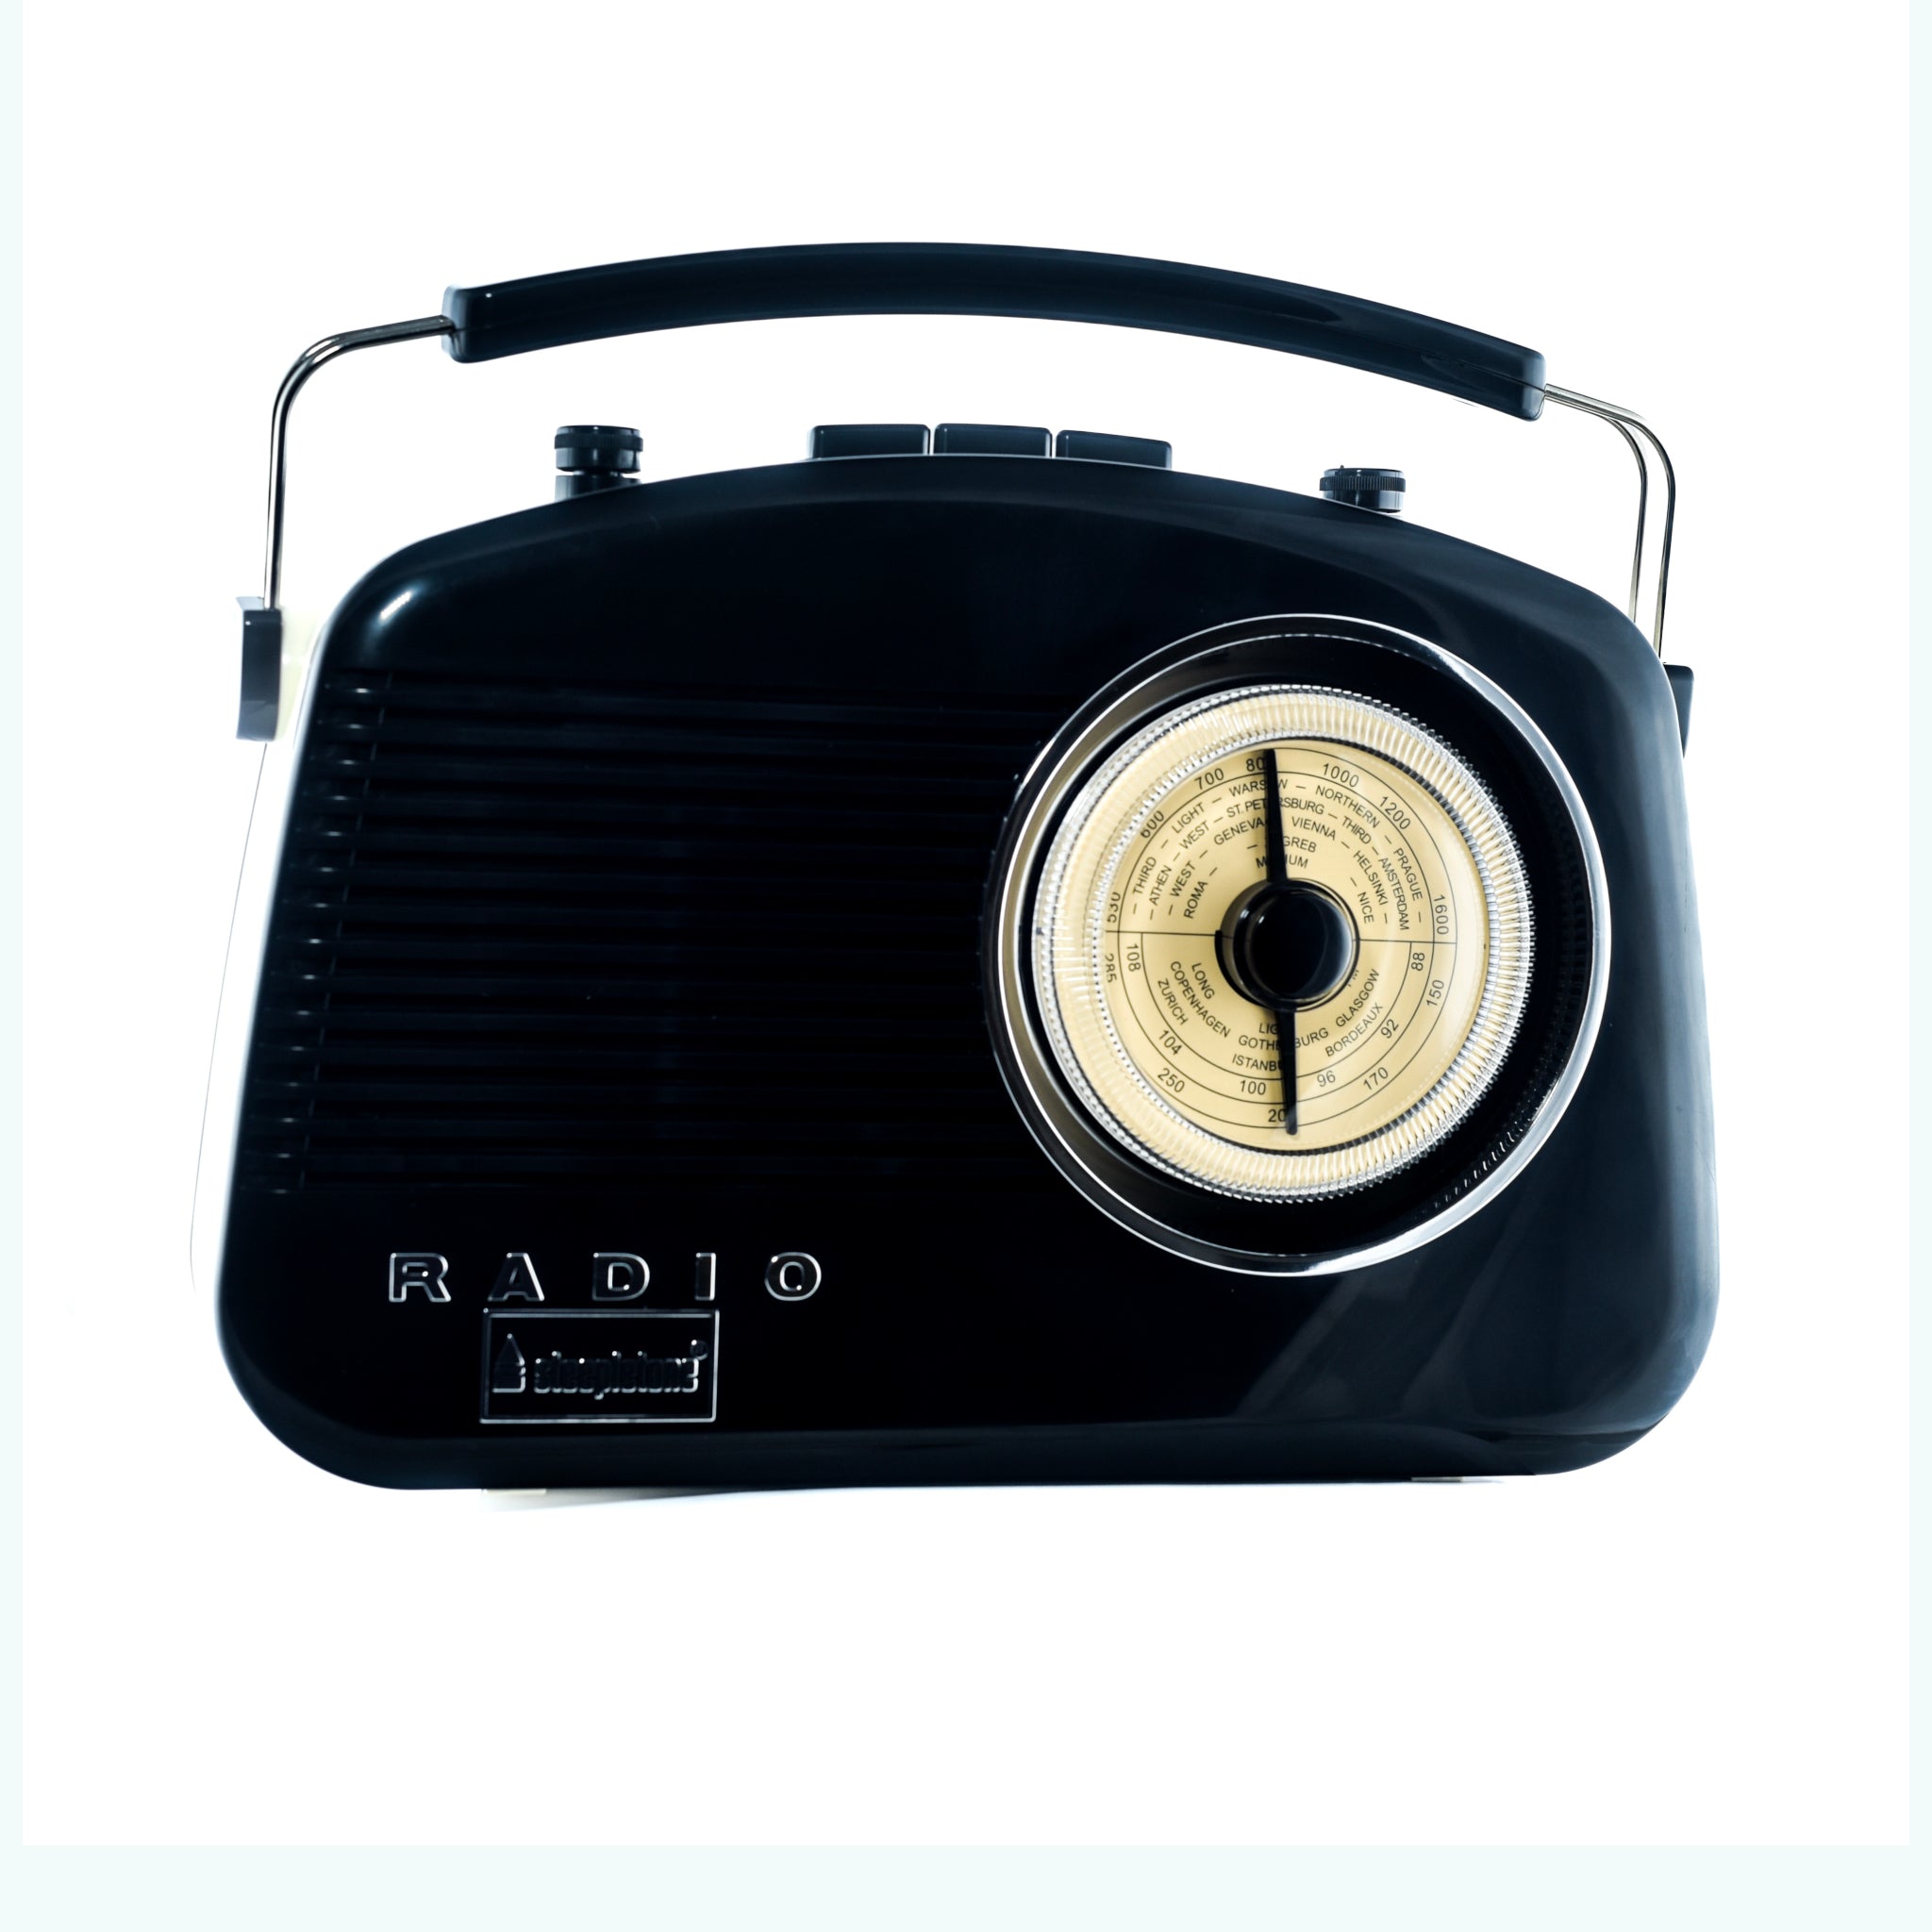 Steepletone Retro Brighton Radio